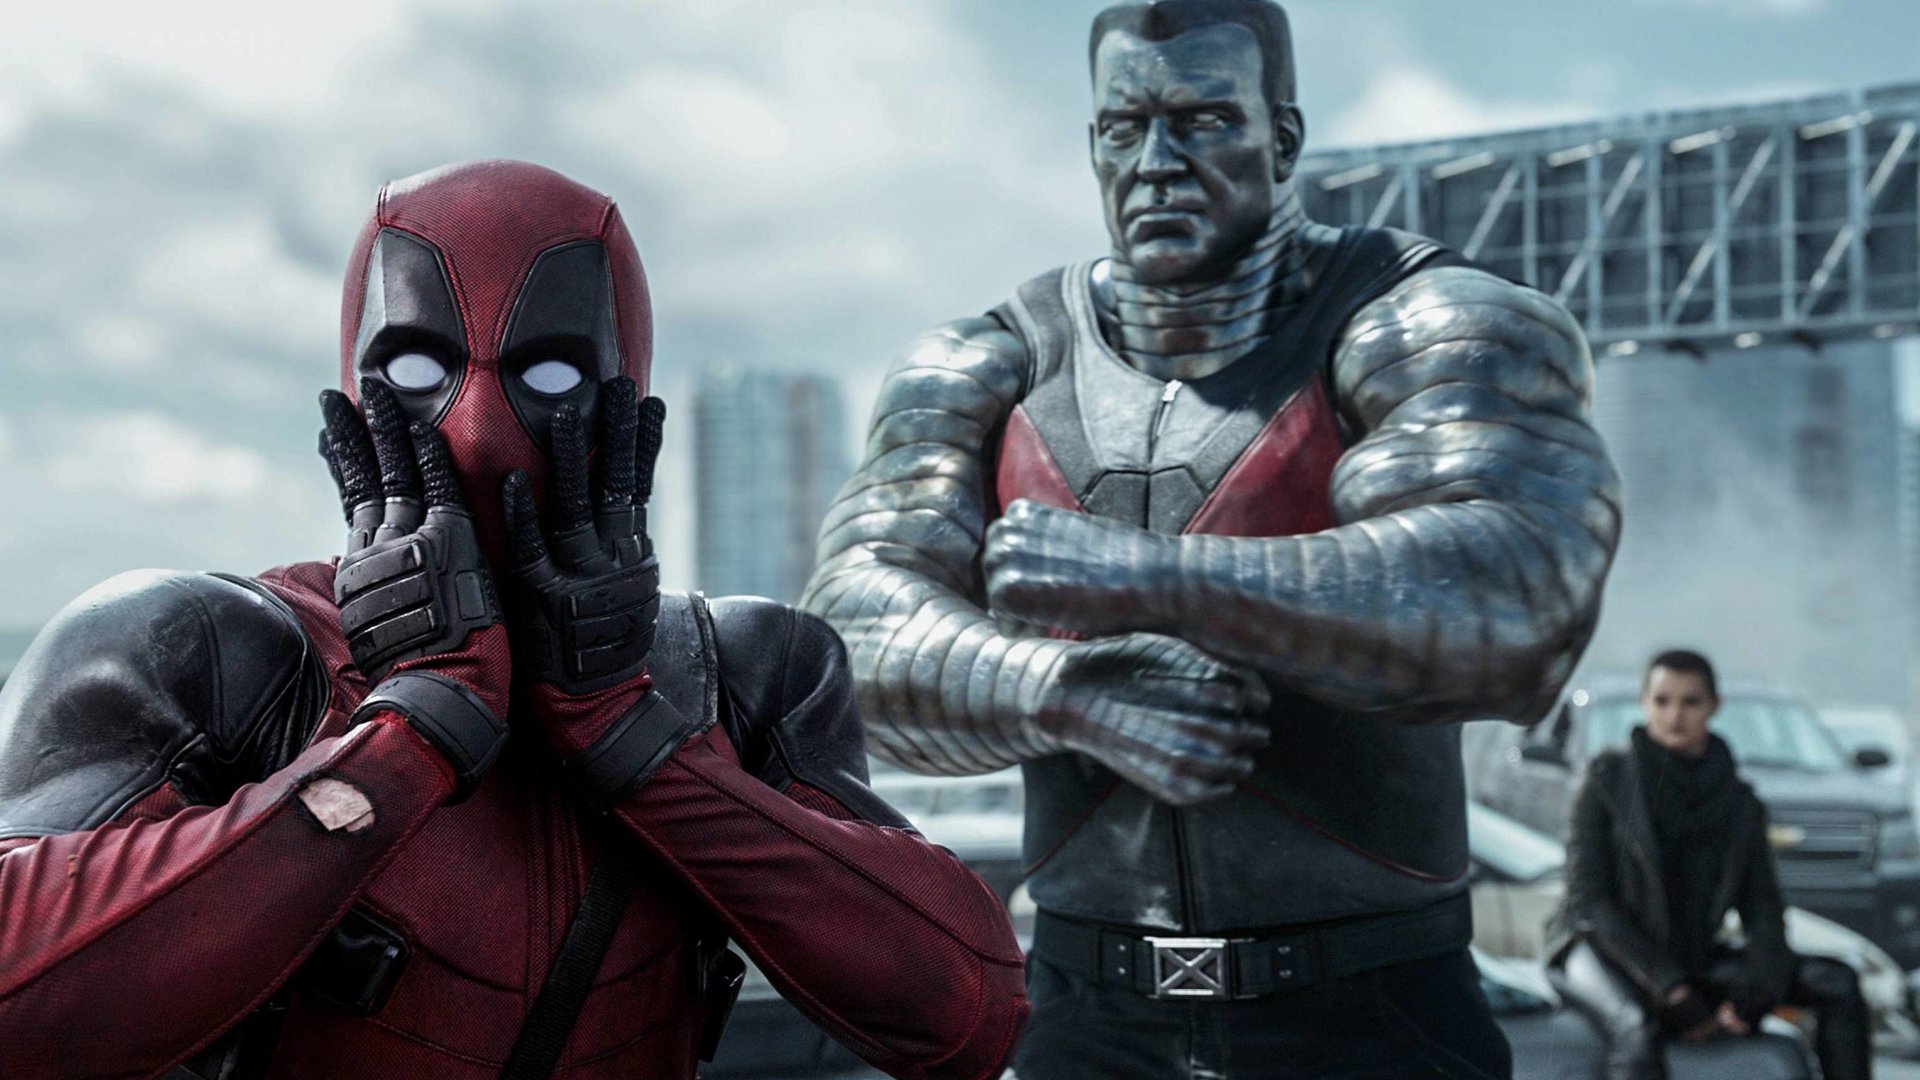 #Riesen-Überraschung für Deadpool-Fans: Dritter Teil kommt früher ins Kino als geplant